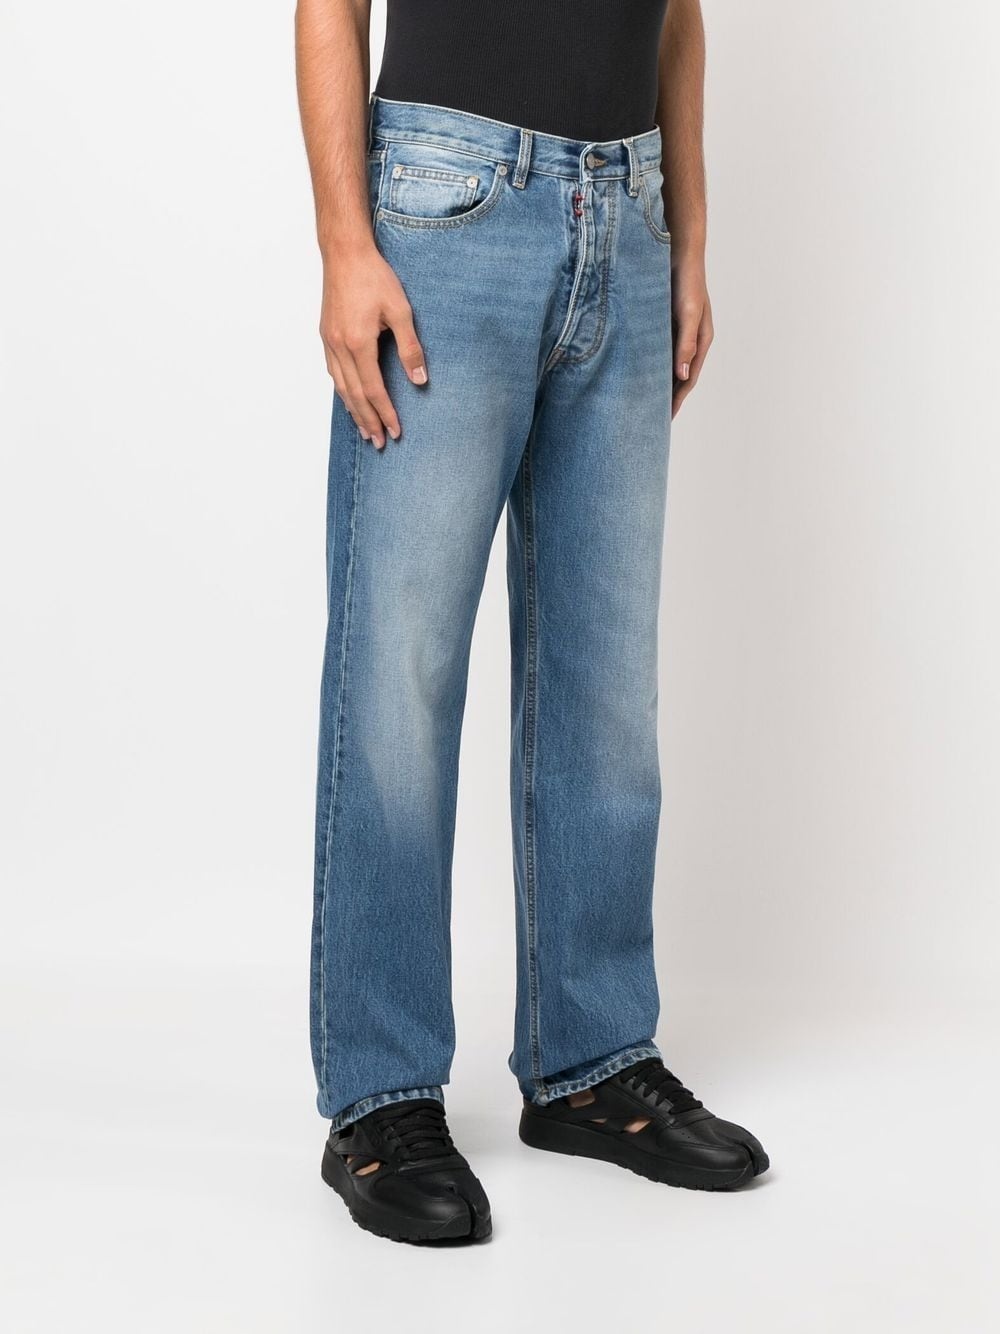 5-pocket denim jeans - 2